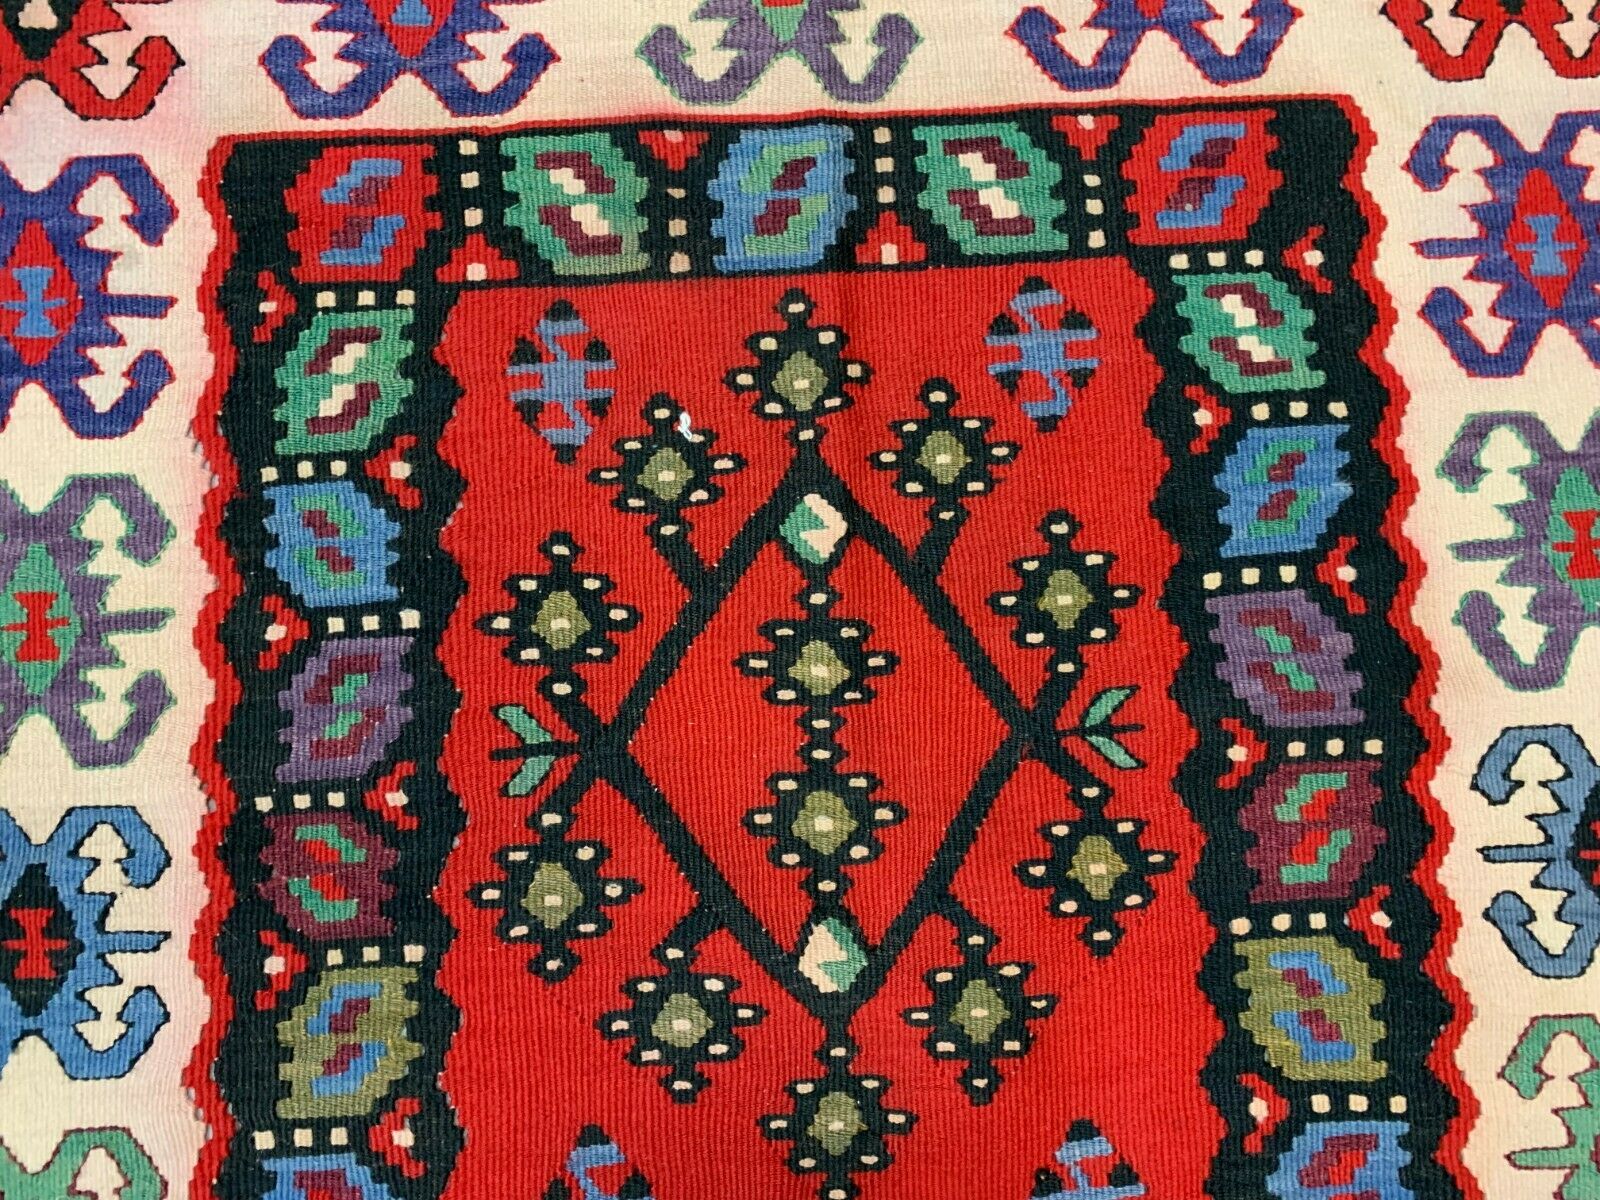 Vintage Turkish Kilim, Serbian Pirot Kelim Rug shabby wool 200x100 cm Medium Antiques:Carpets & Rugs kilimshop.myshopify.com